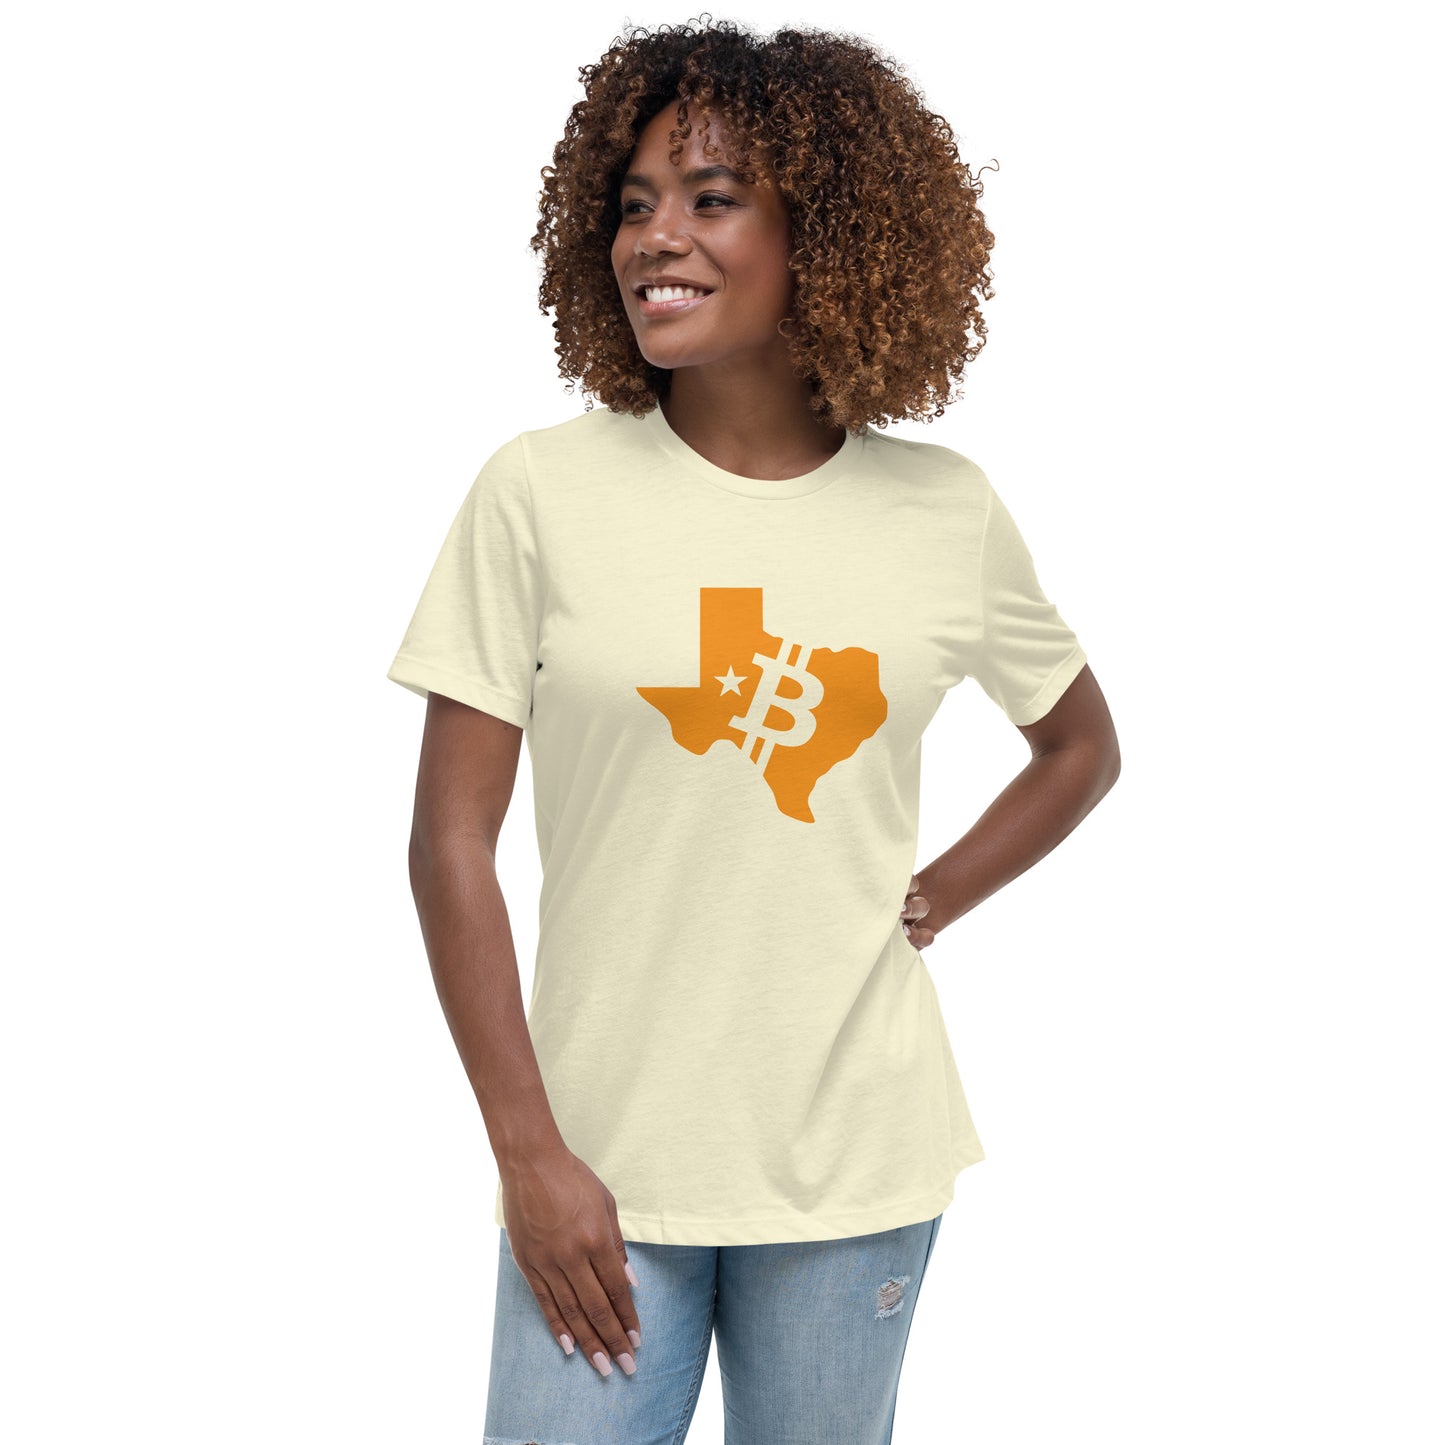 Orangepill Texas Women's Relaxed T-Shirt